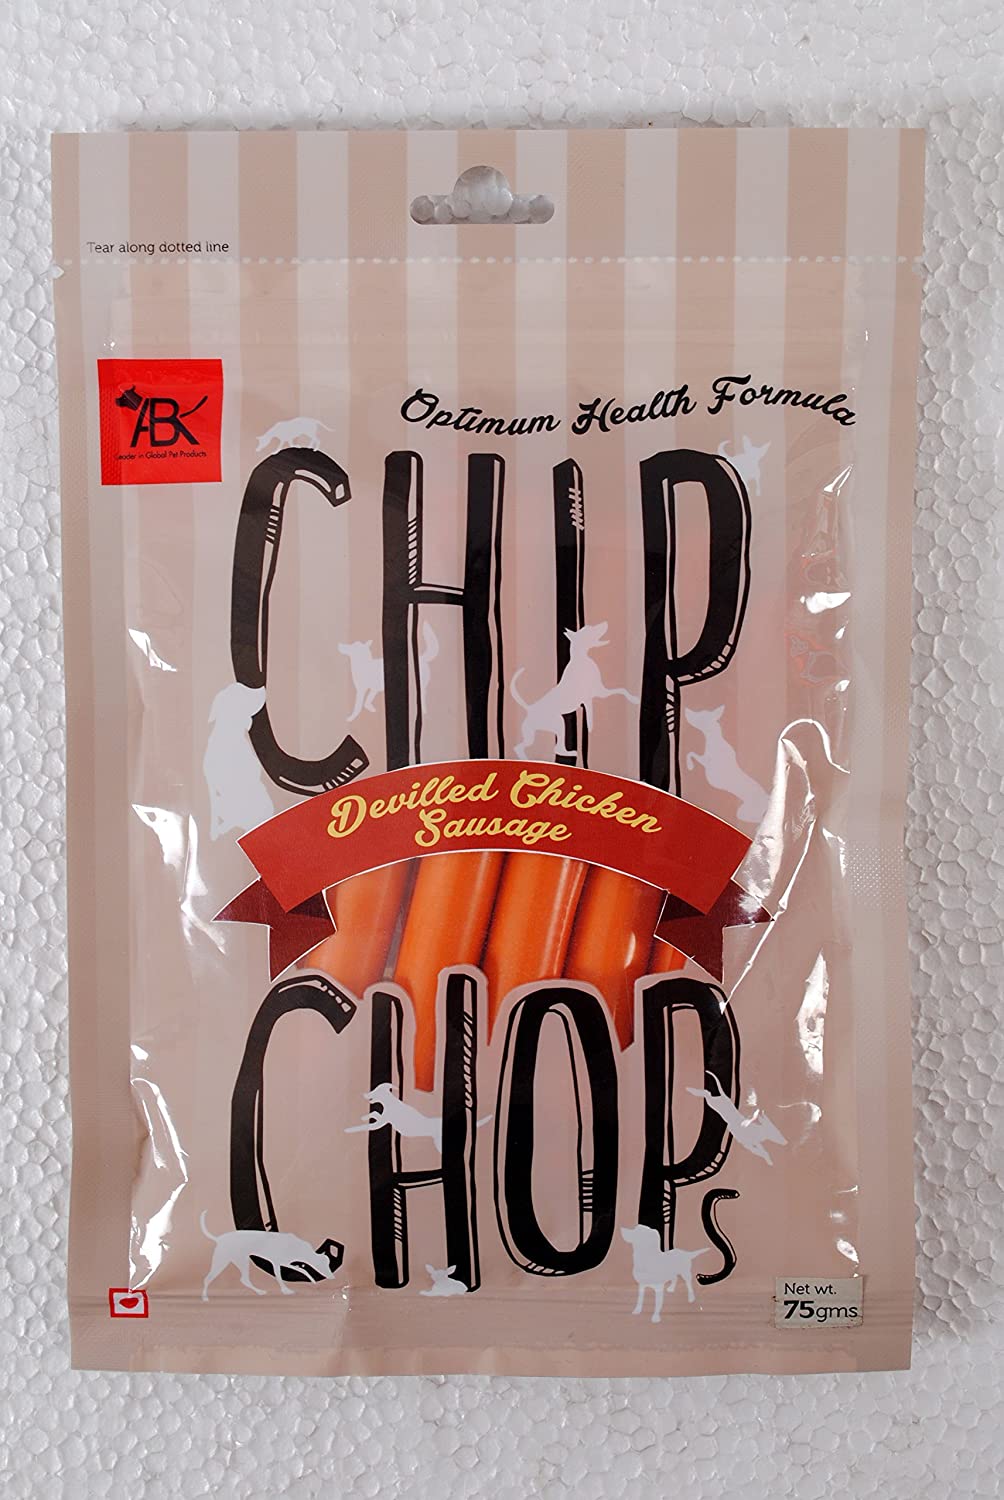 Chip Chops Devilled Chicken Sausage